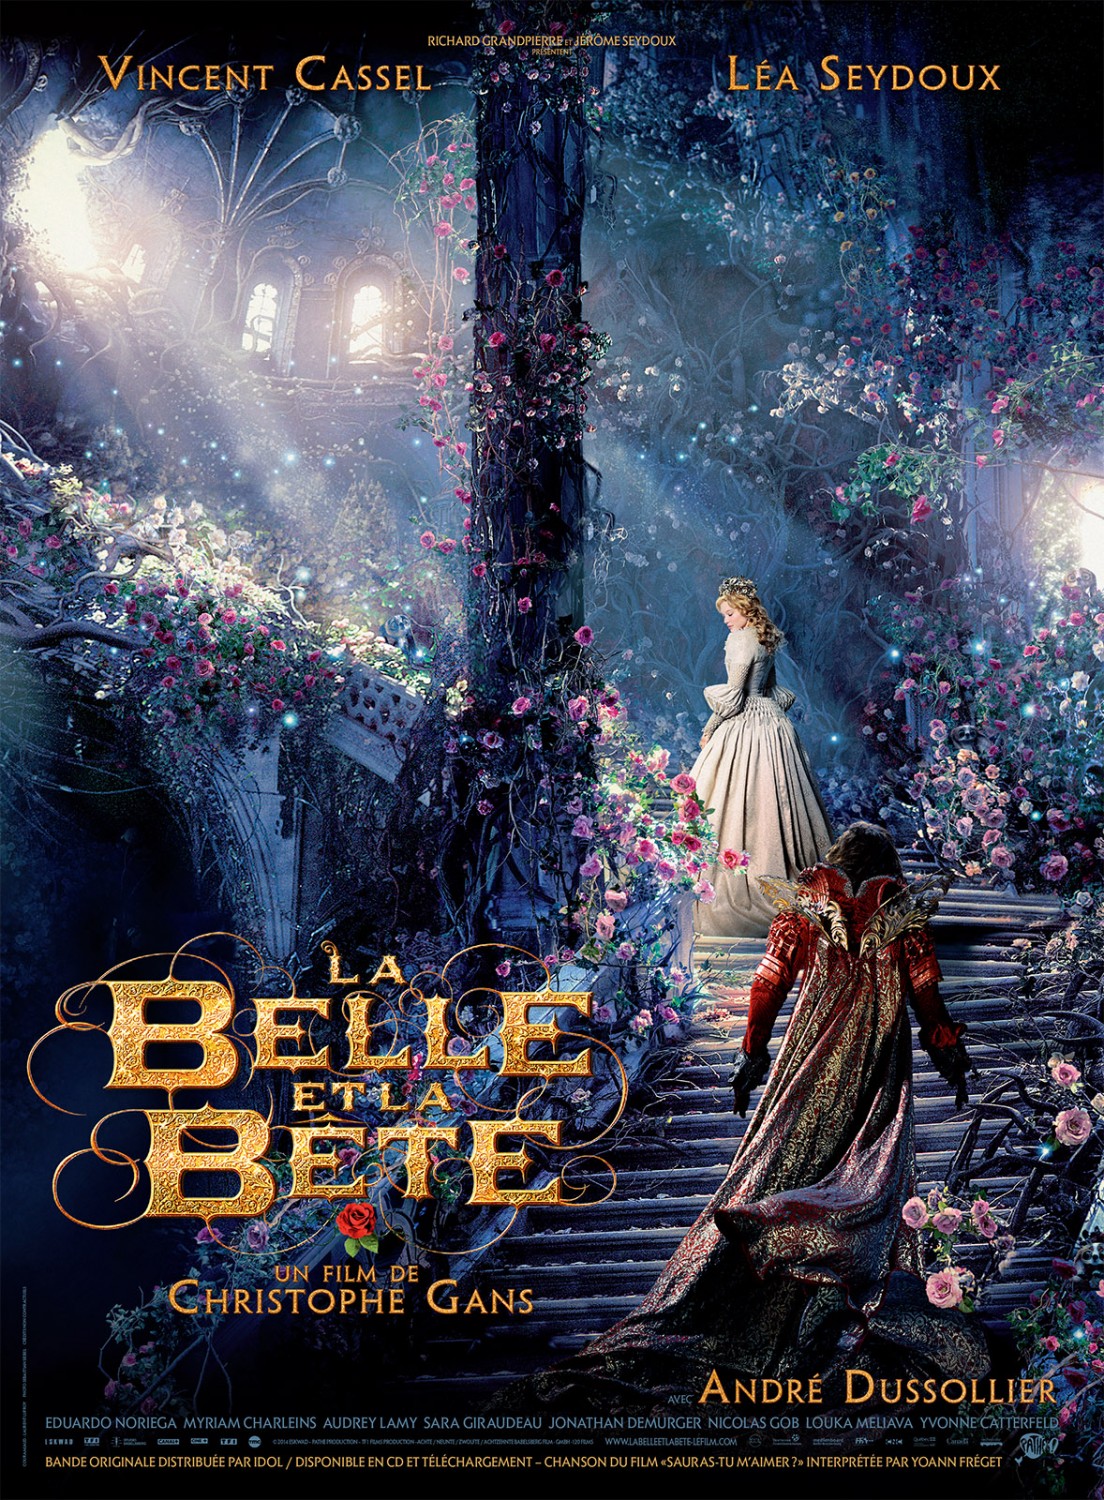 Extra Large Movie Poster Image for La belle & la bête (#2 of 5)